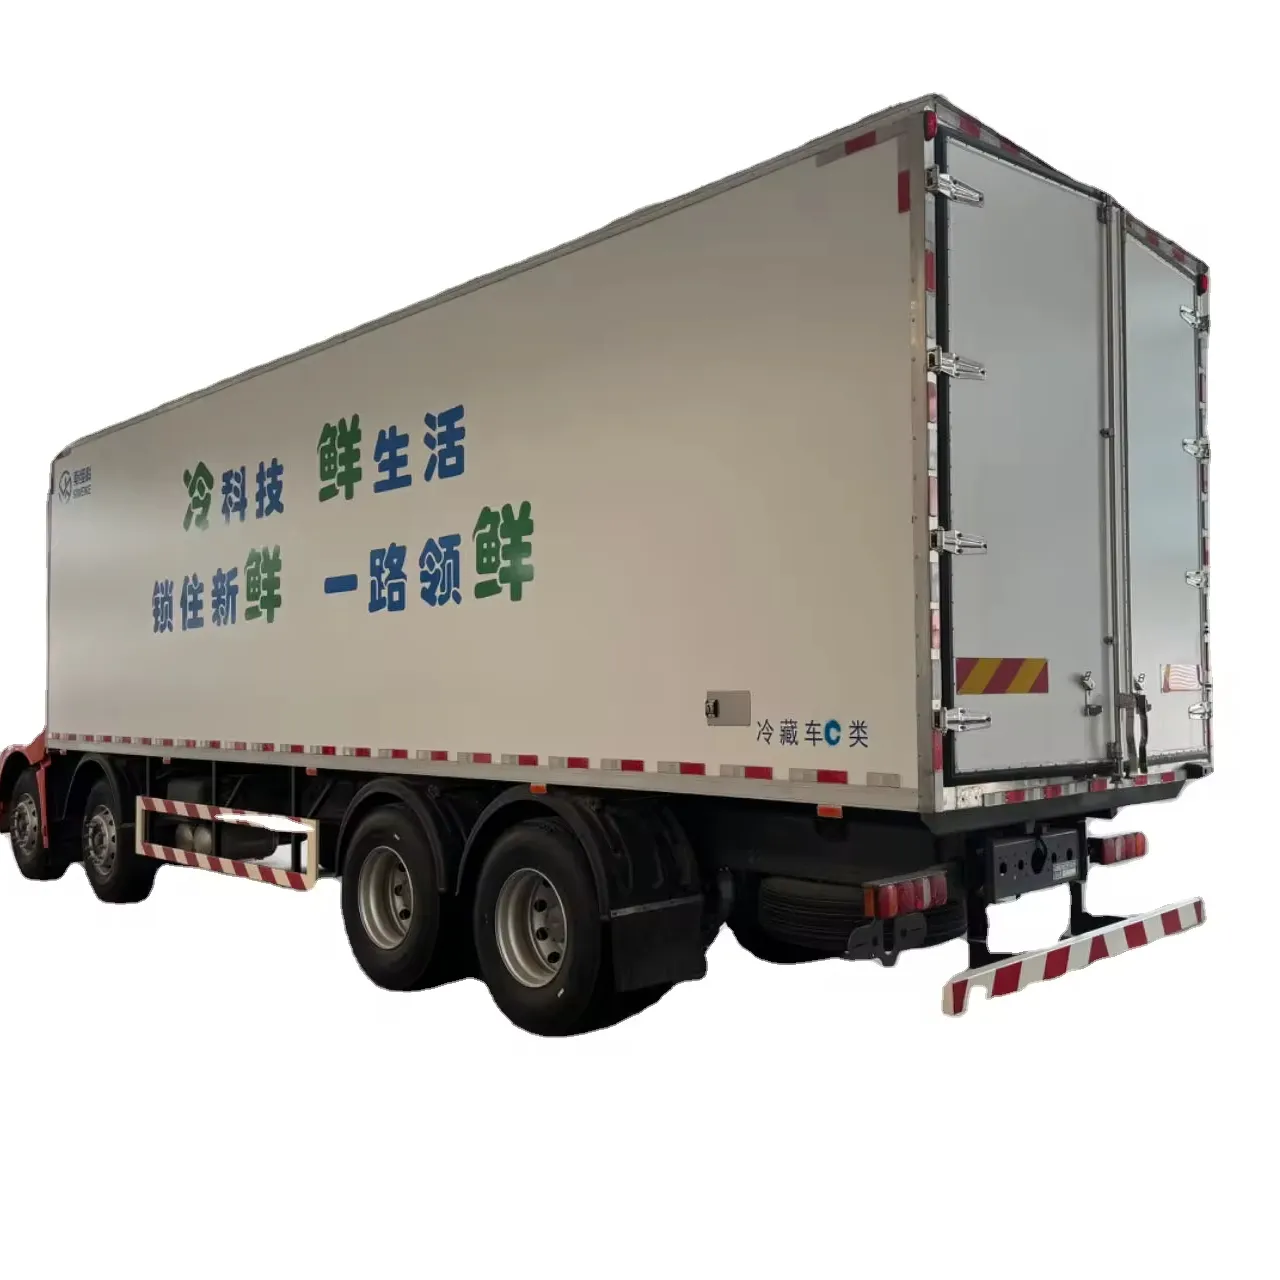 Pannelli carrozzeria camion scatole isolanti in vetroresina pannelli mezzanino frutti di mare verdure carne frutta cassette refrigerate per camion per la vendita